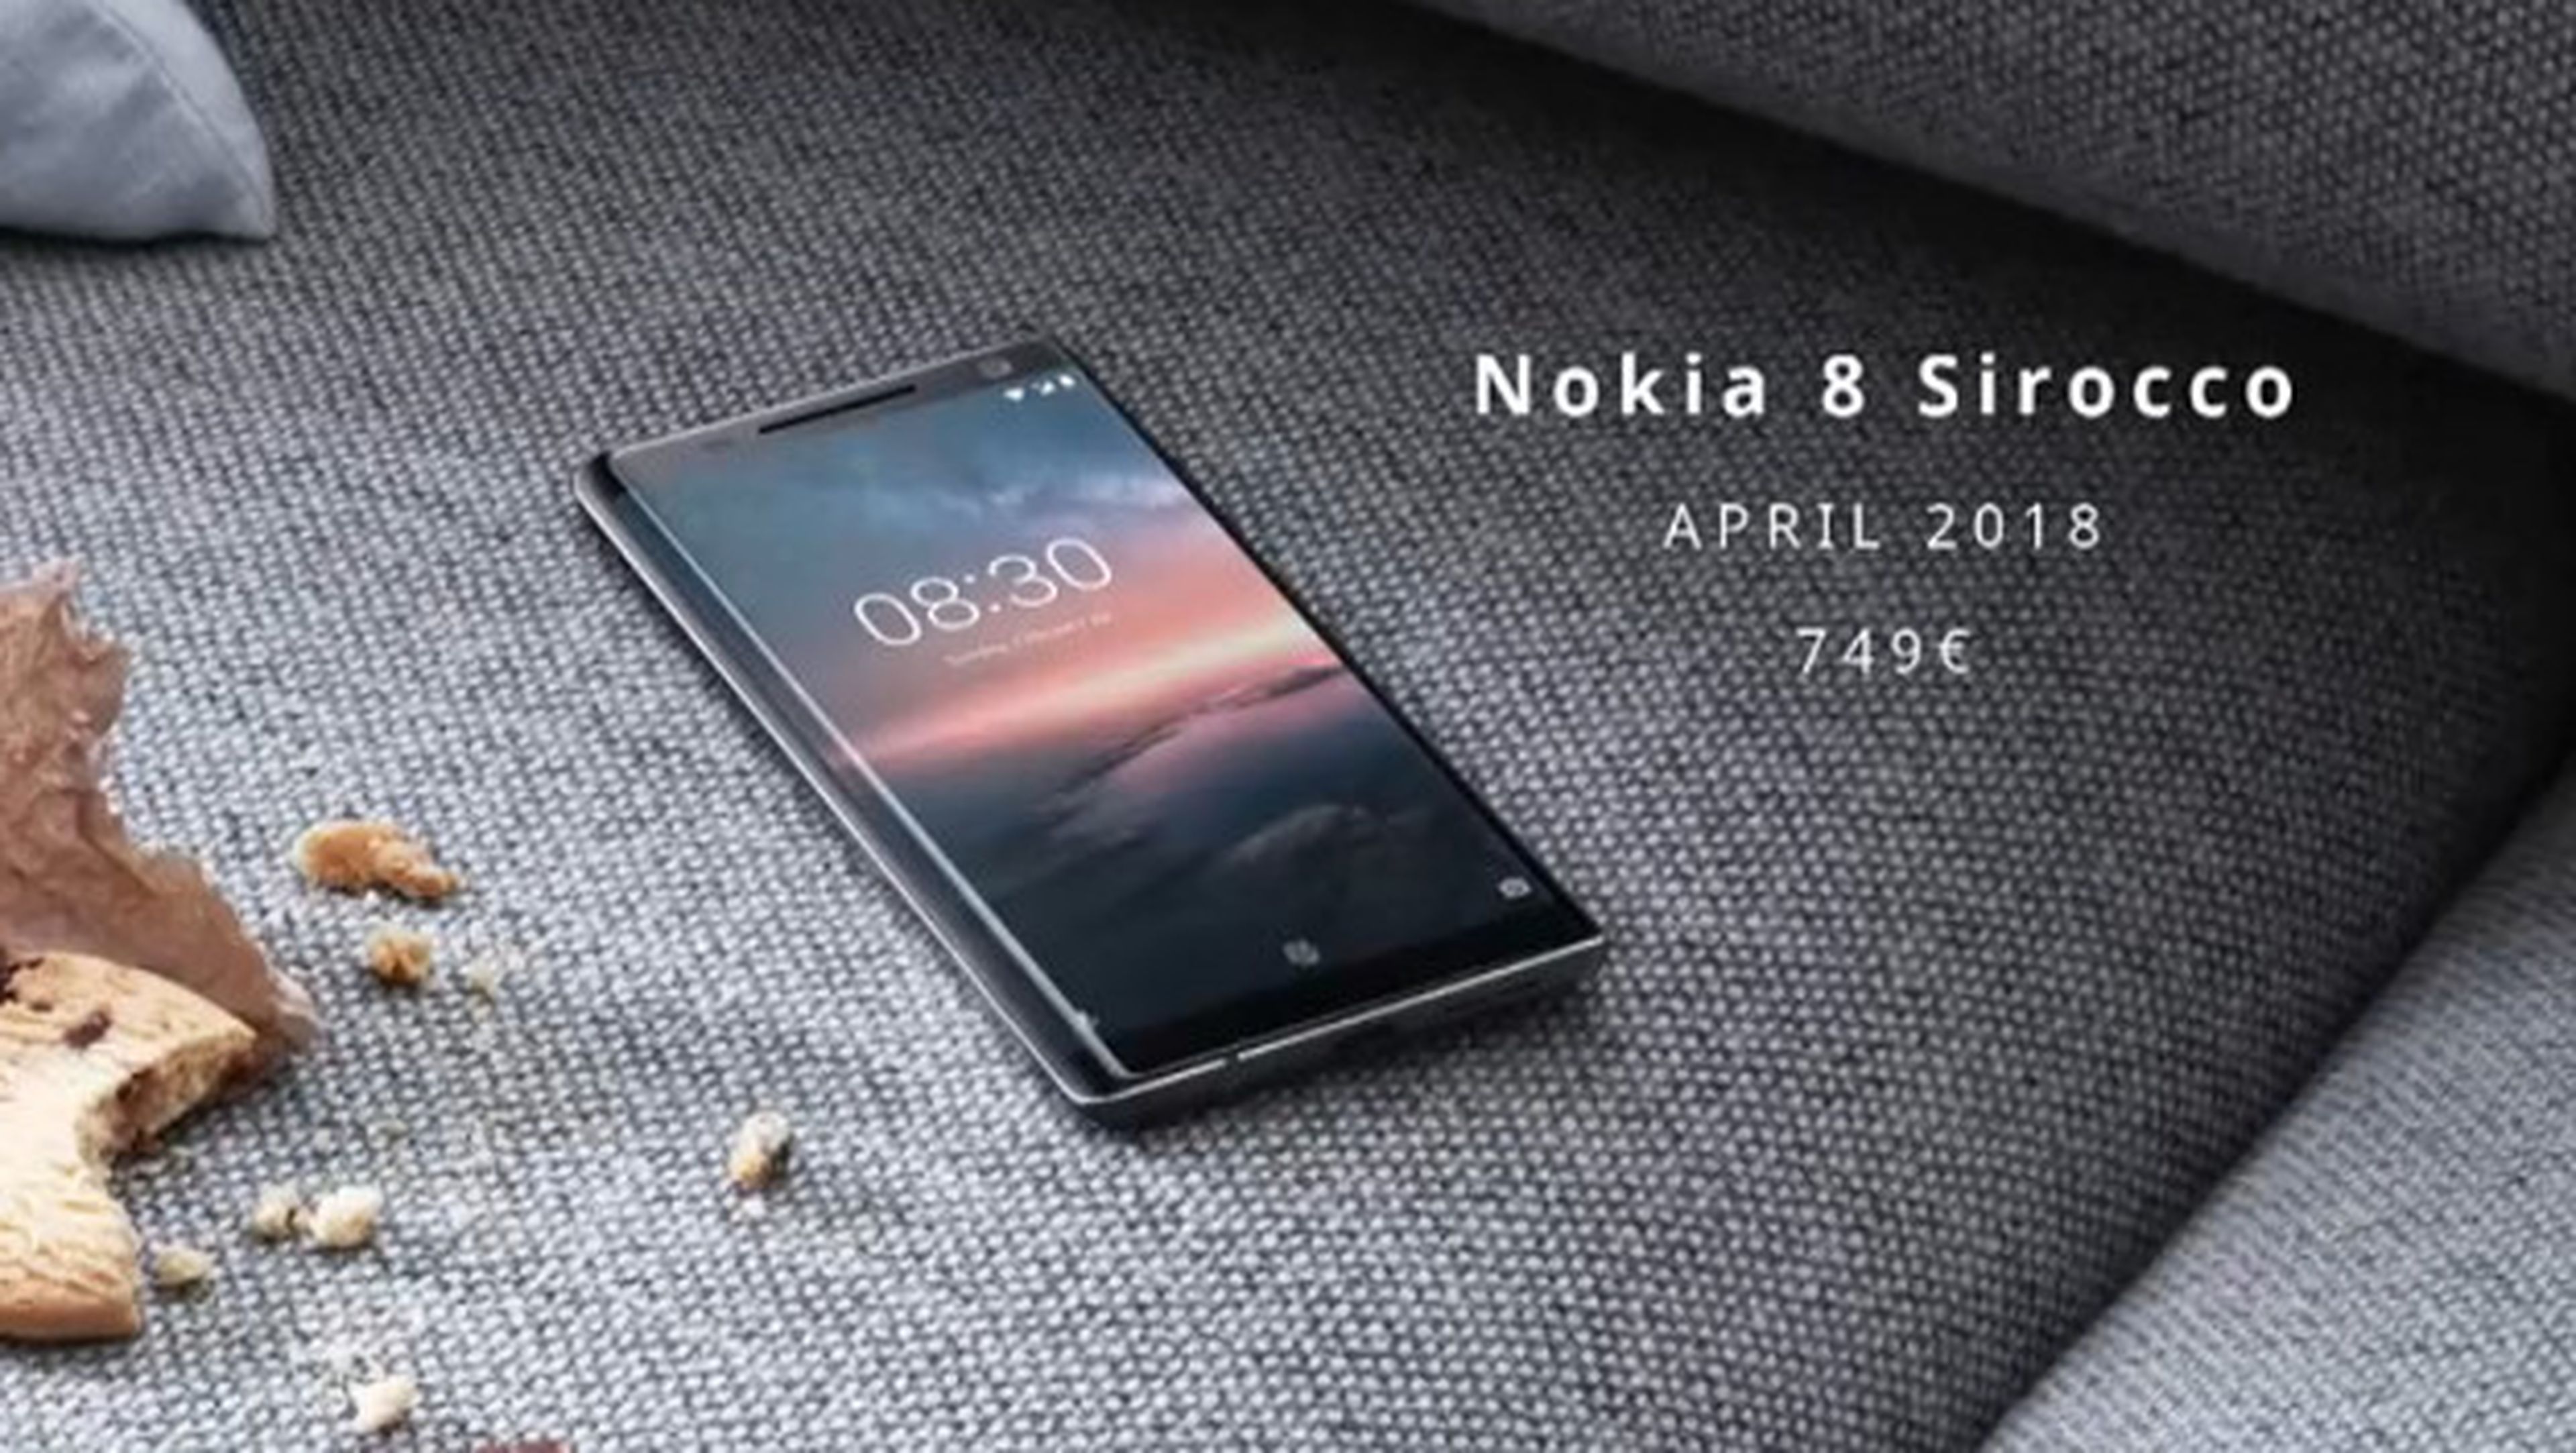 Nuevos móviles Nokia Android One presentados en el MWC 2018.